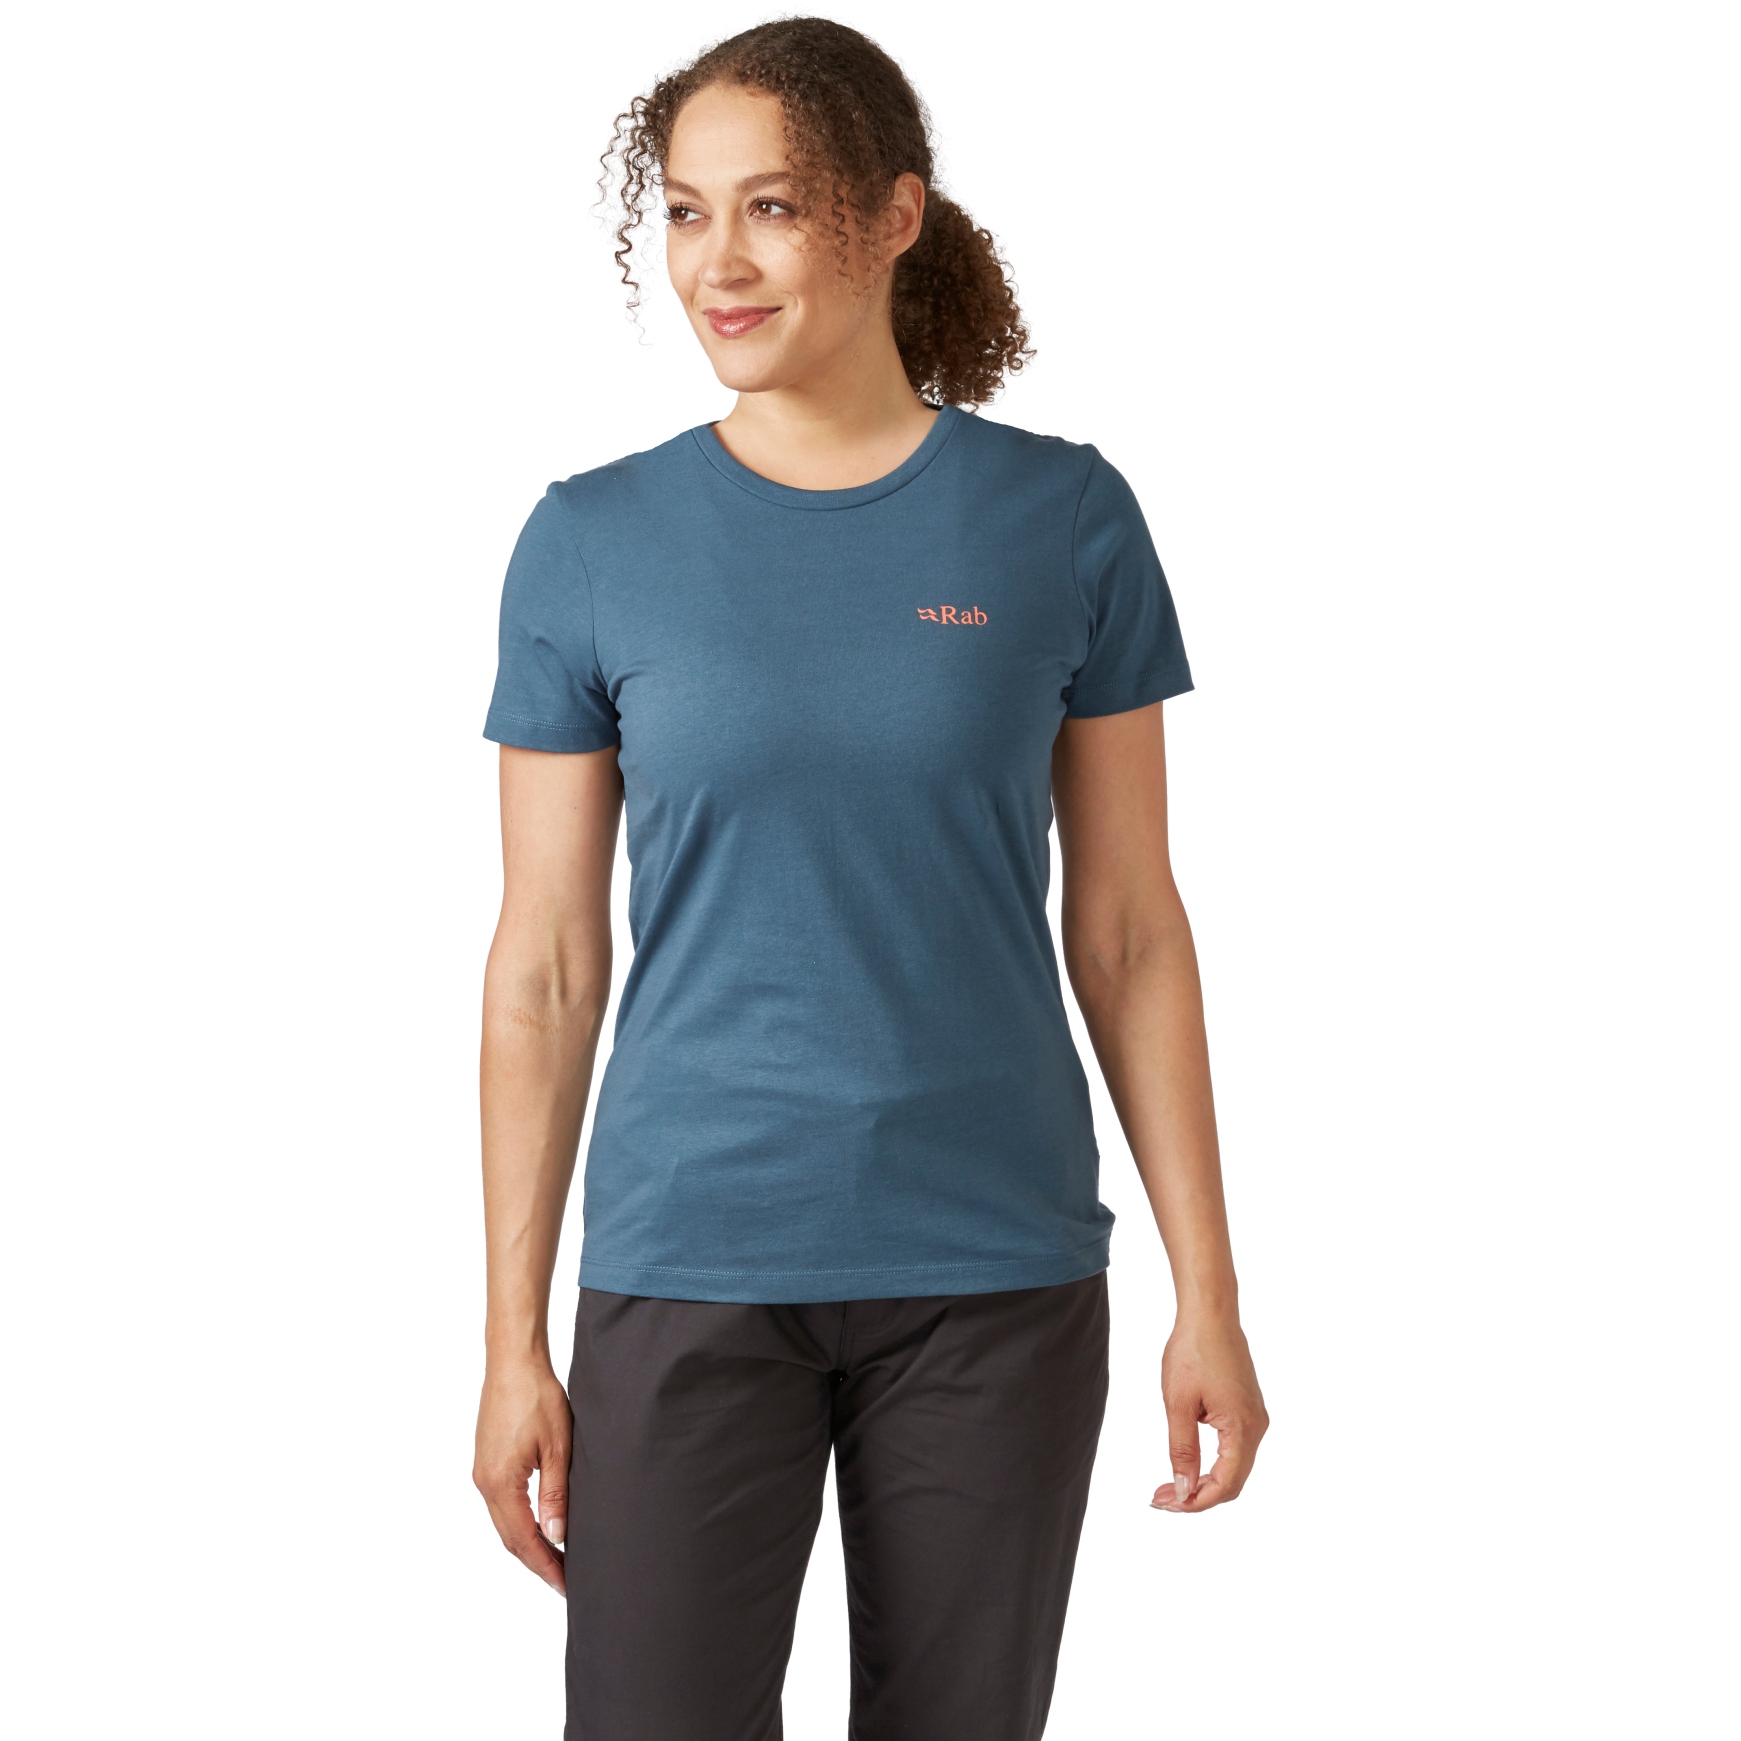 Foto de Rab Camiseta Mujer - Stance Cinder - orion blue